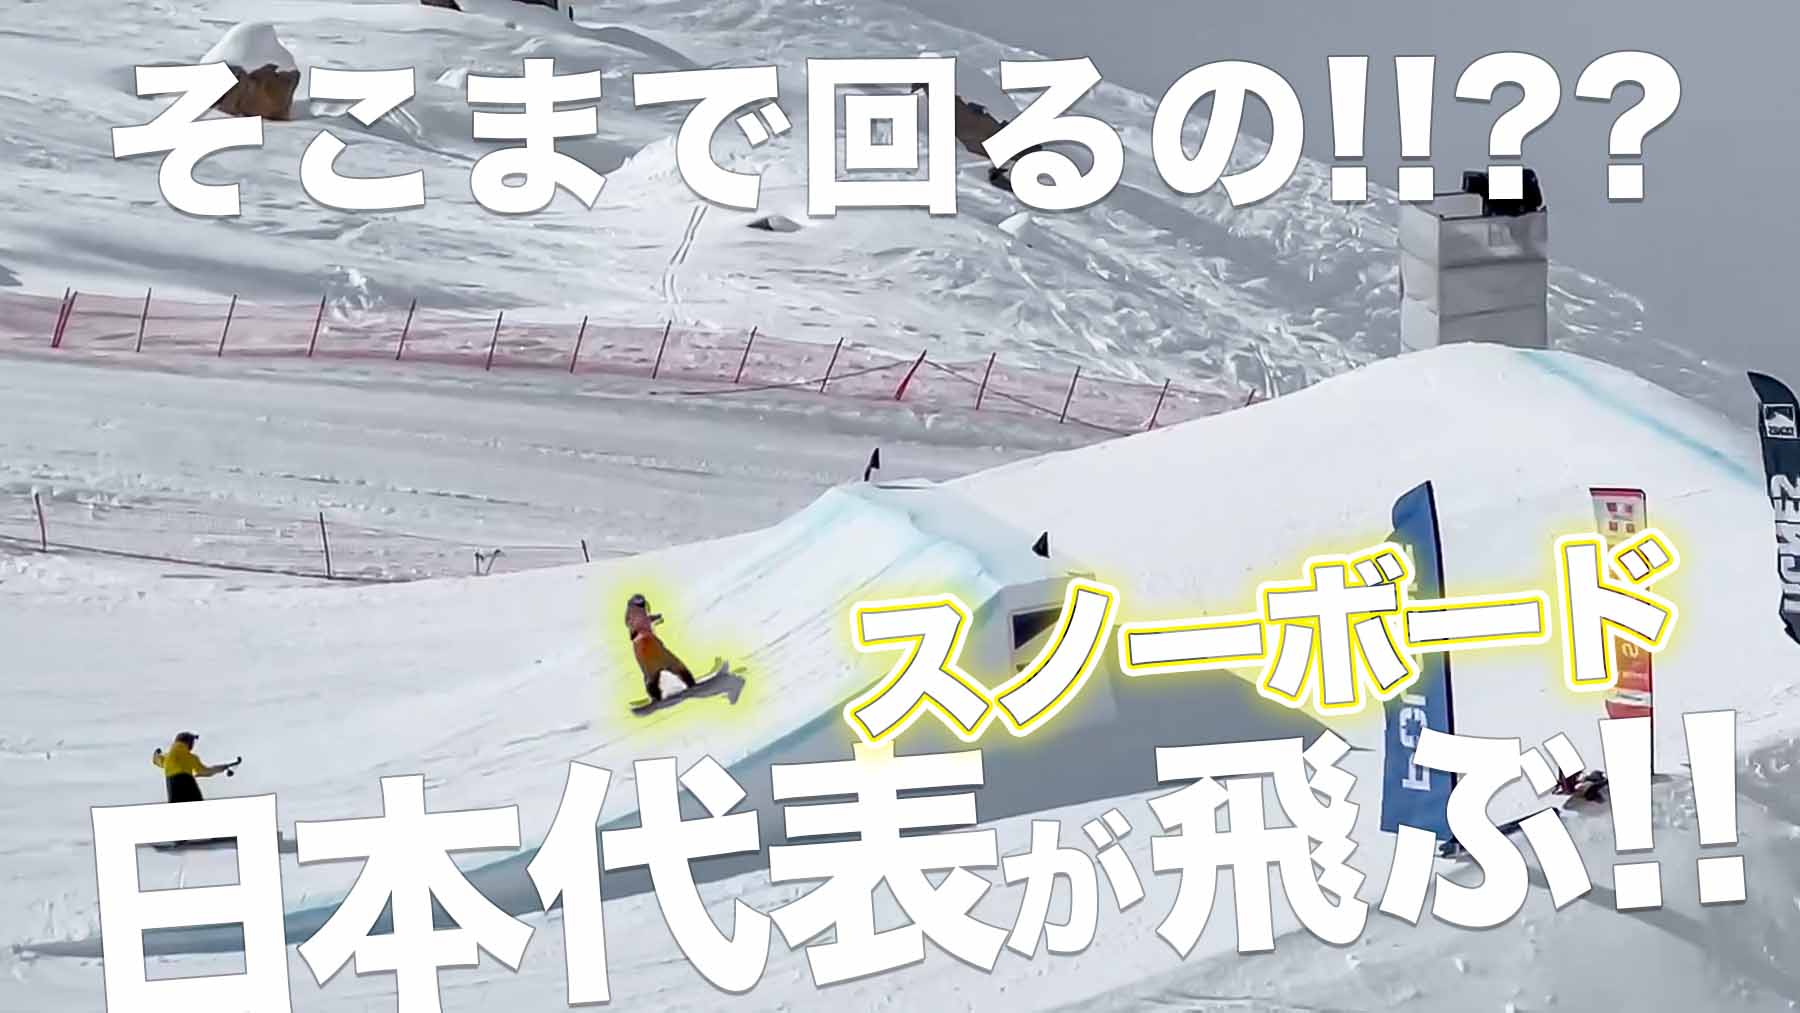 【スノーボード】 FISスロープスタイル・ワールドカップ2戦目 フランス・ティグネスにて華麗に舞う！練習映像公開